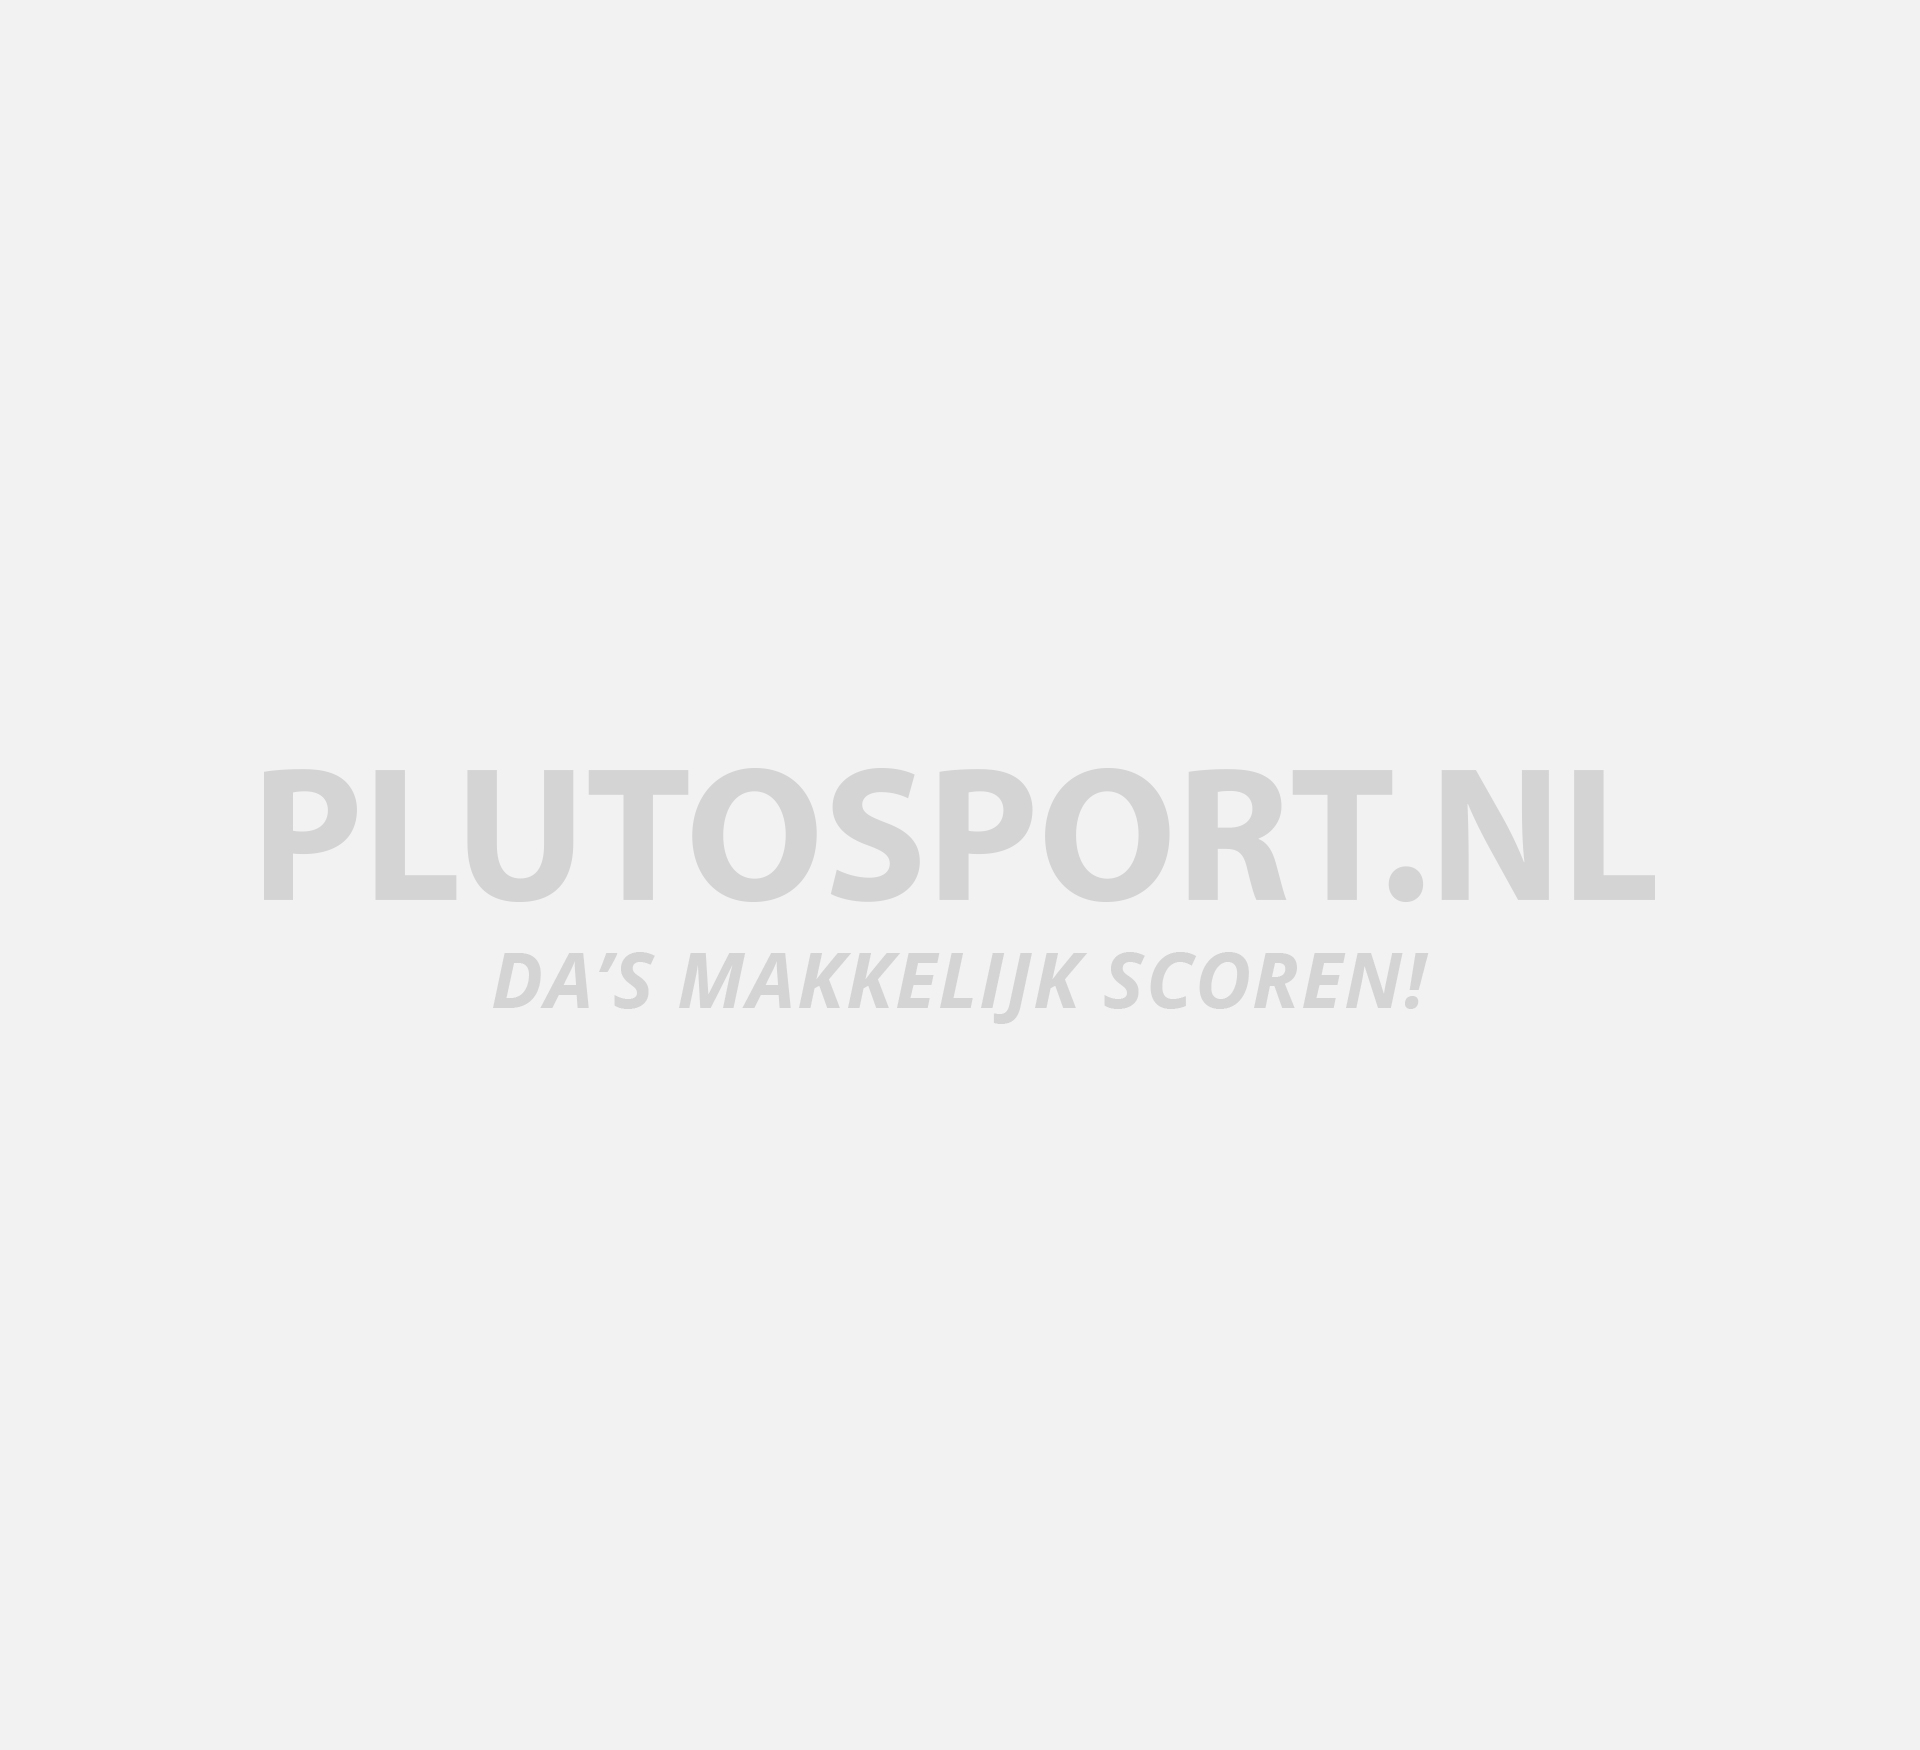 zeemijl Minister Warmte Zandstra Comfort Norenschaats Sr | Plutosport